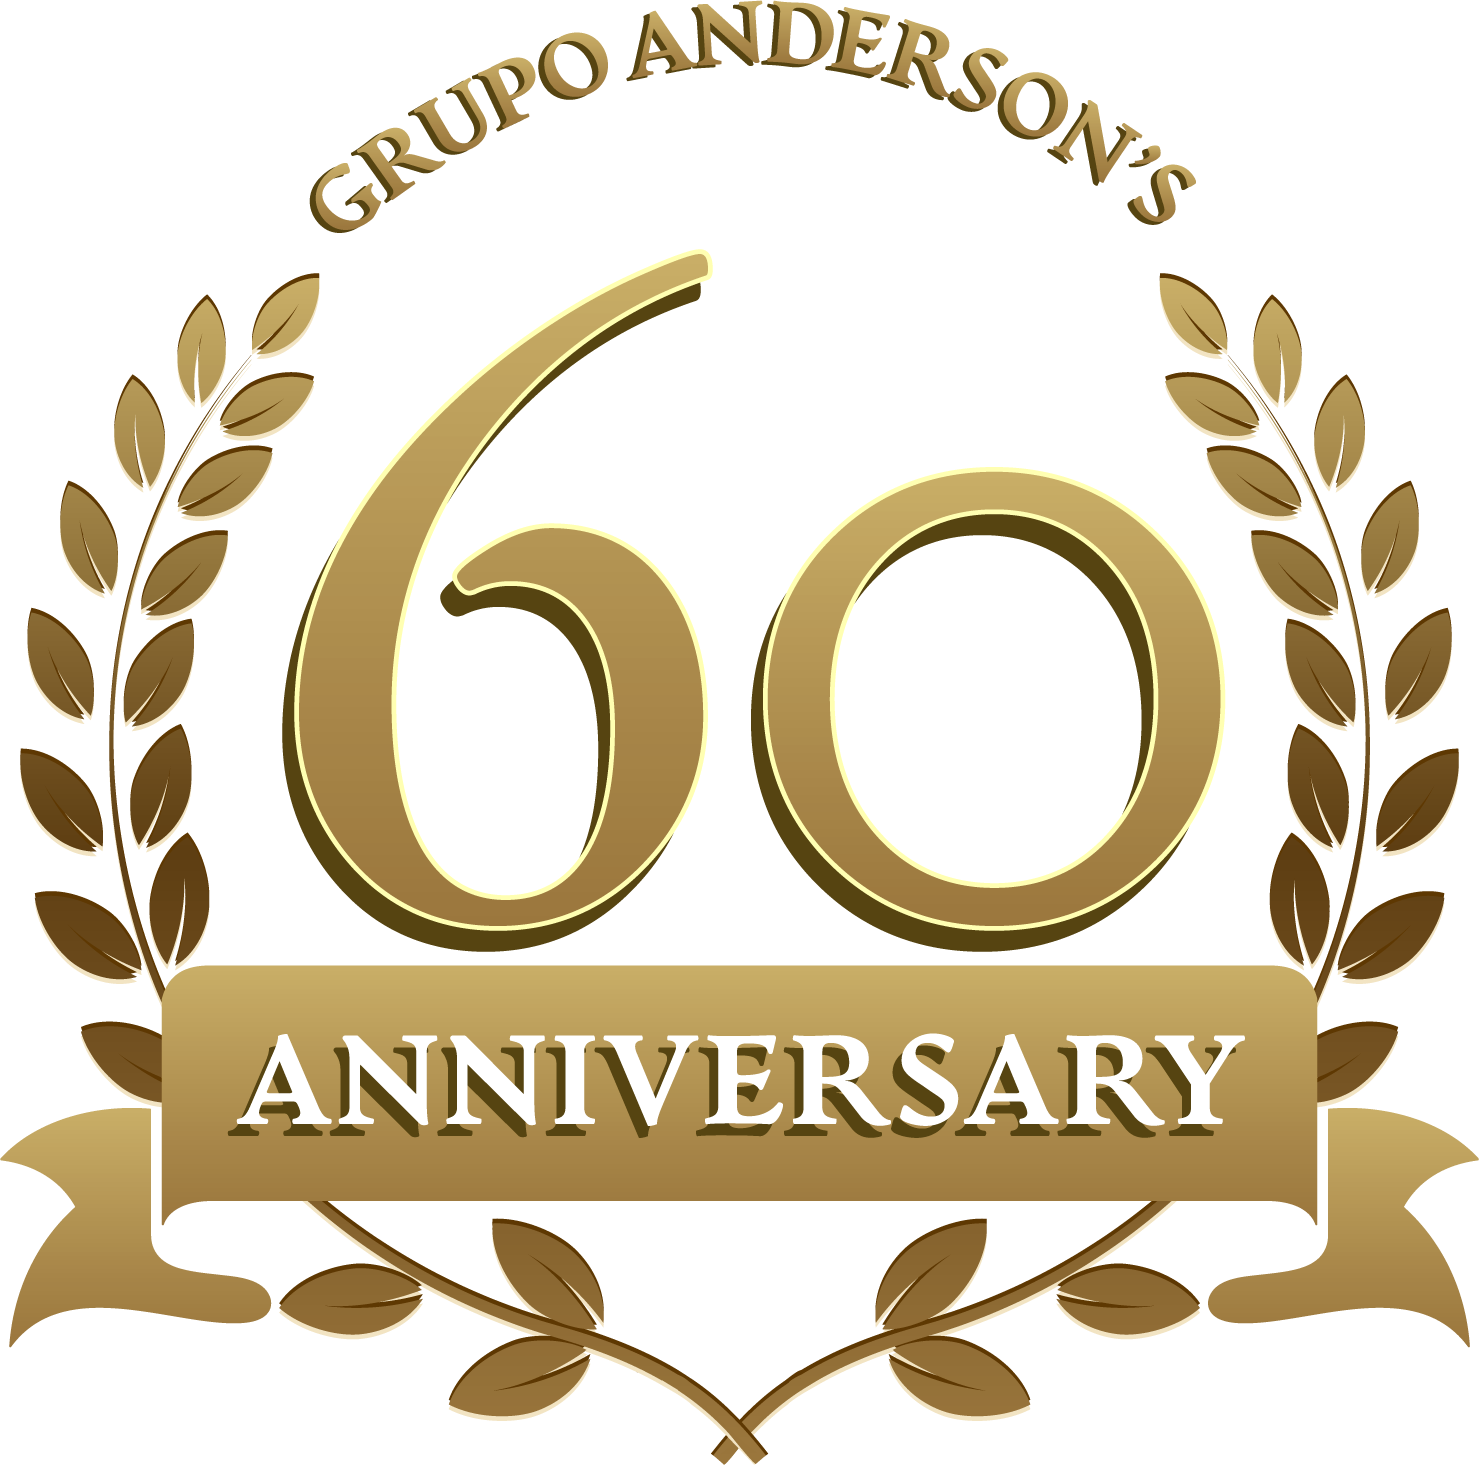 60 aniversario grupo andersons en